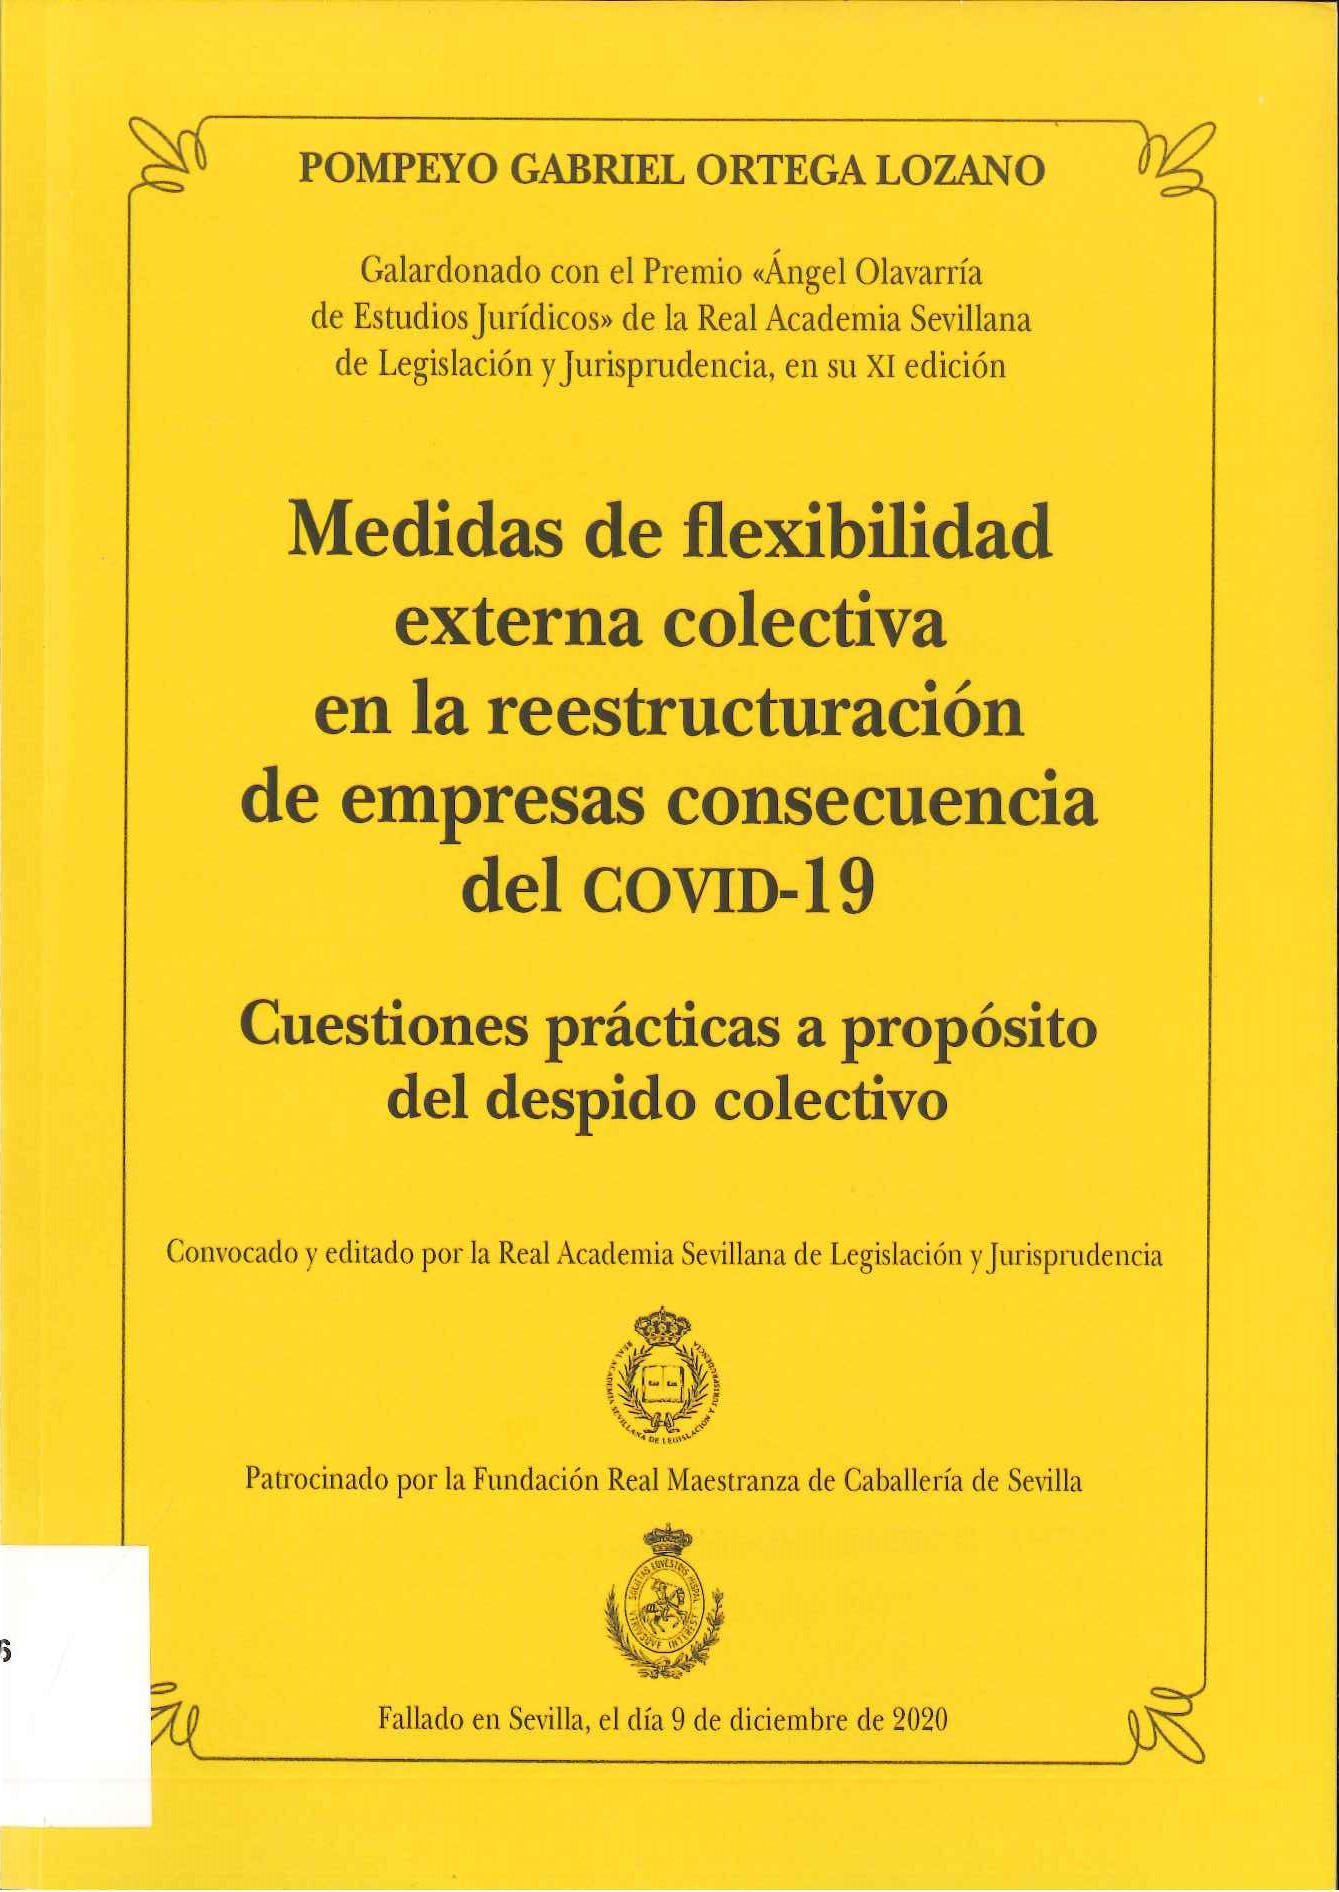 Imagen de portada del libro Medidas de flexibilidad externa colectiva en la reestructuración de empresas consecuencia del COVID-19